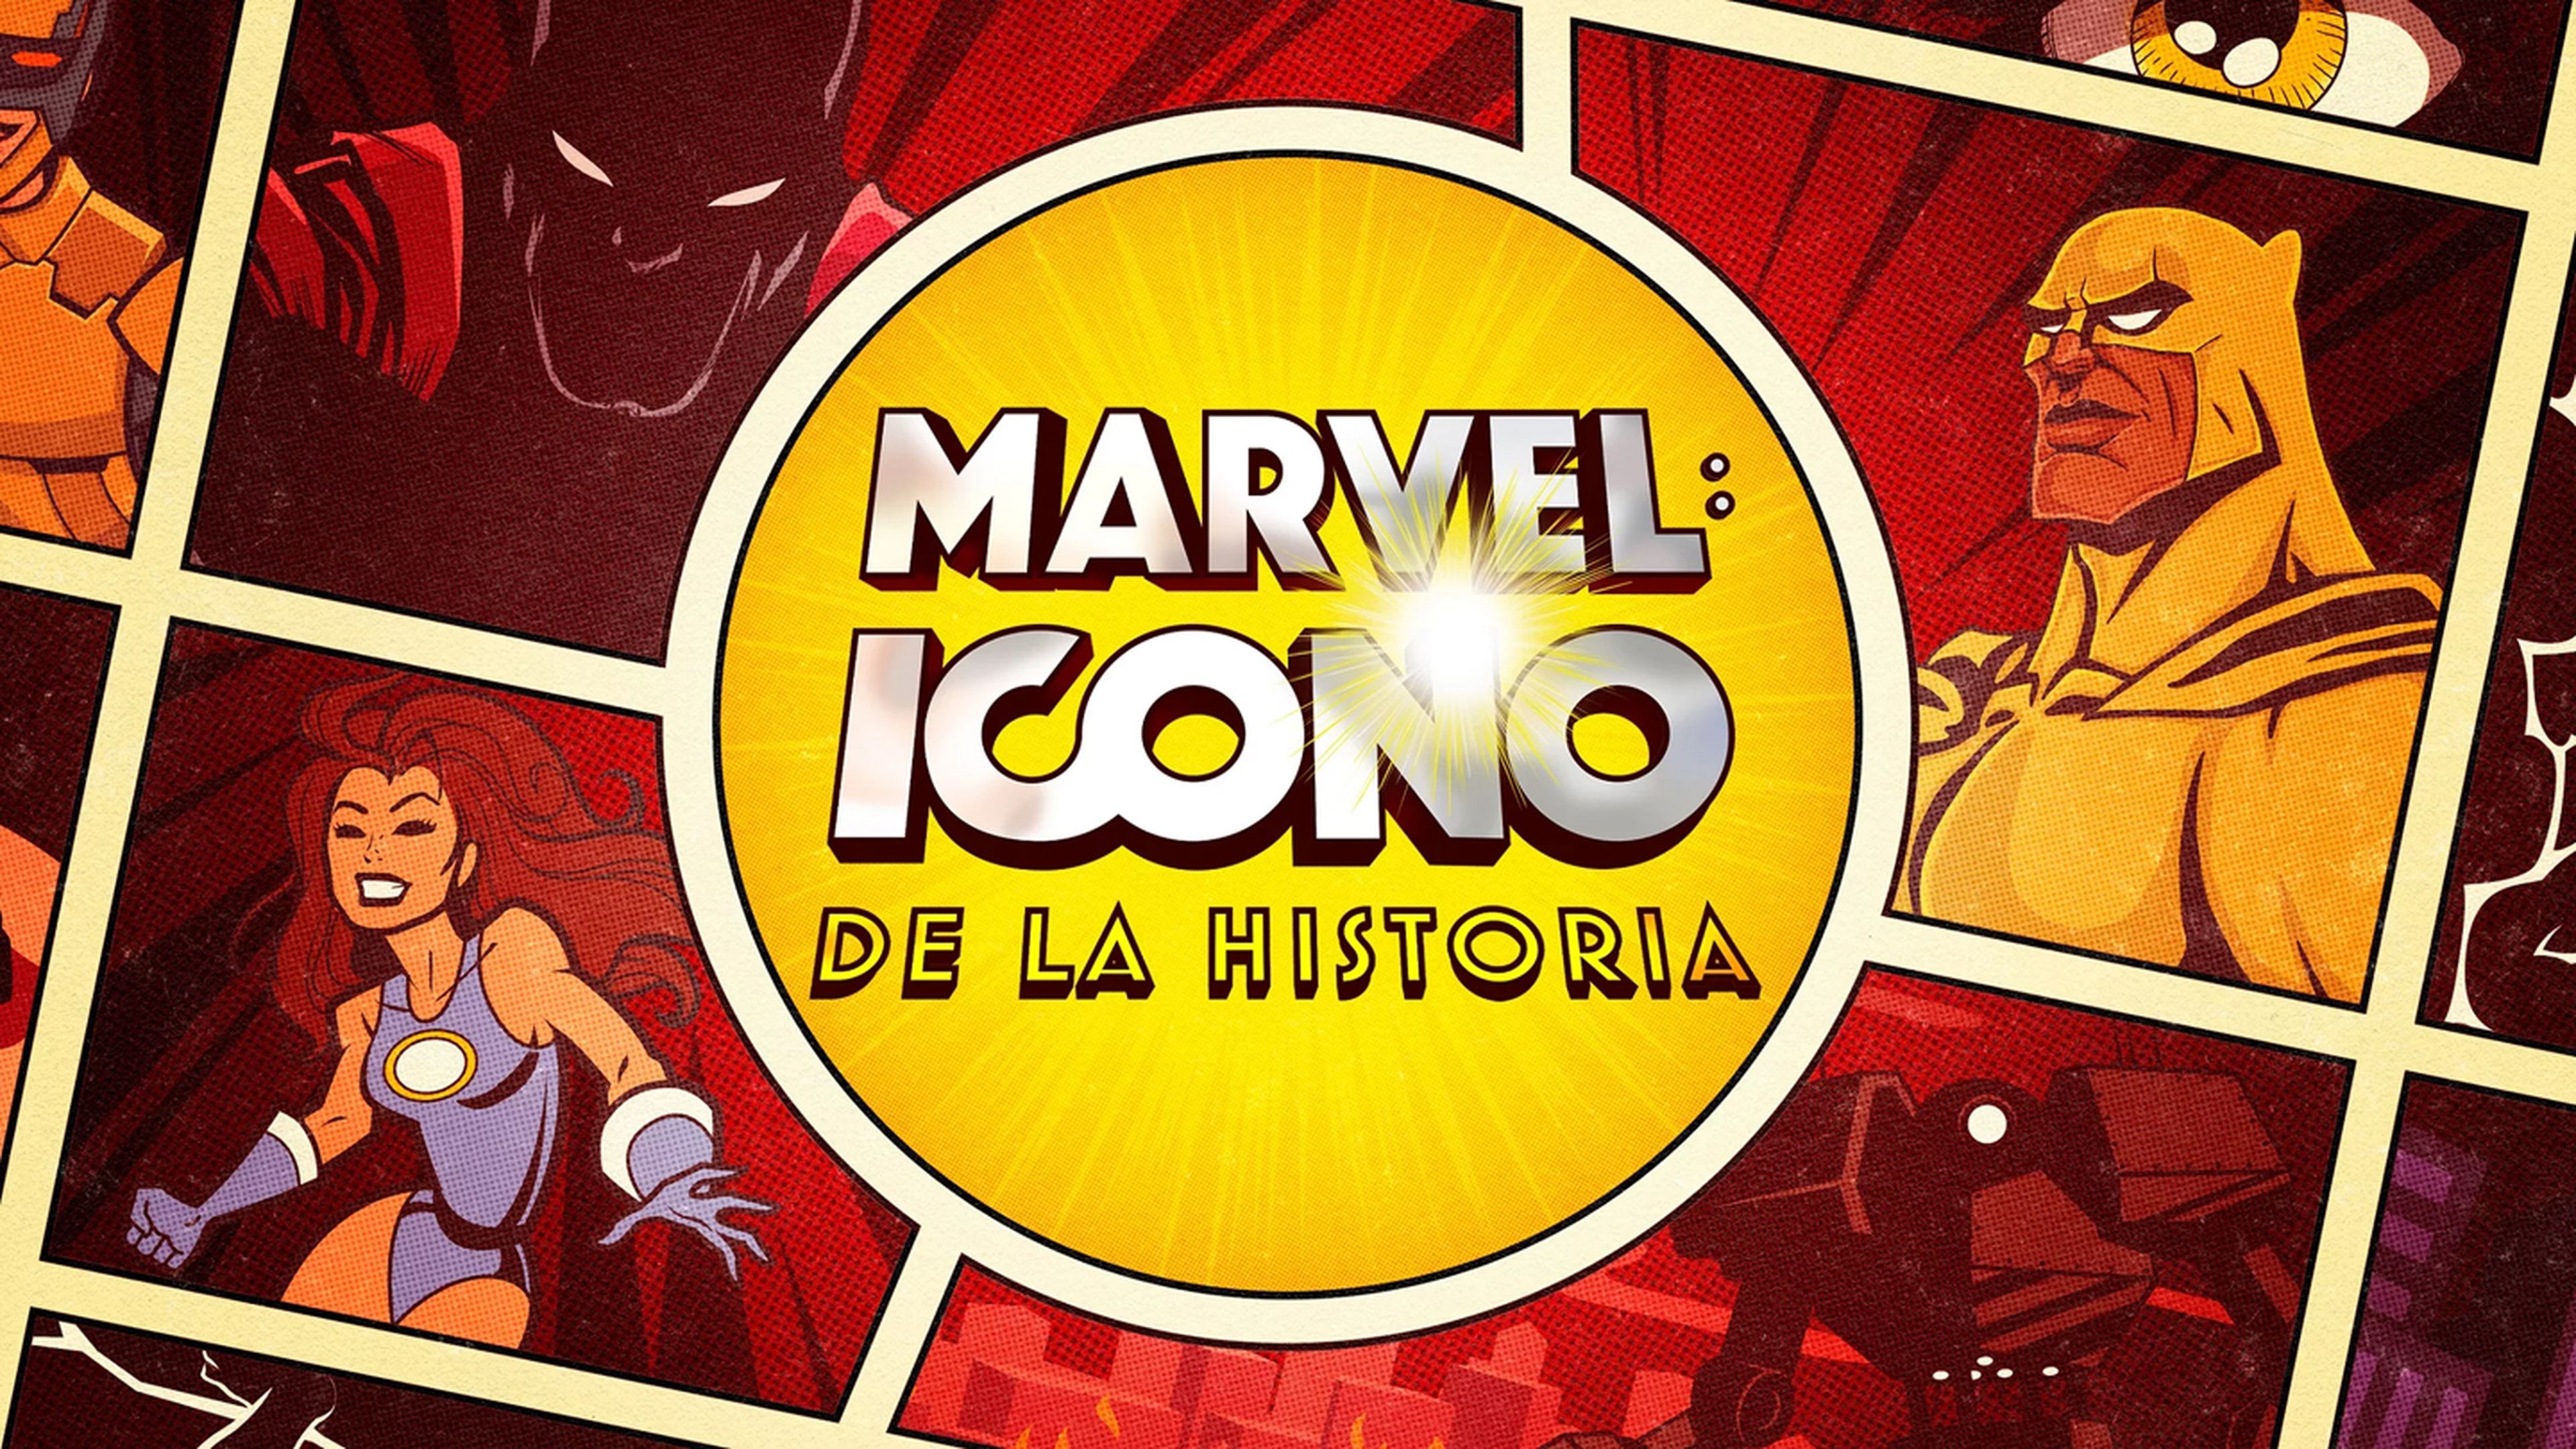 Marvel Icono de la Historia